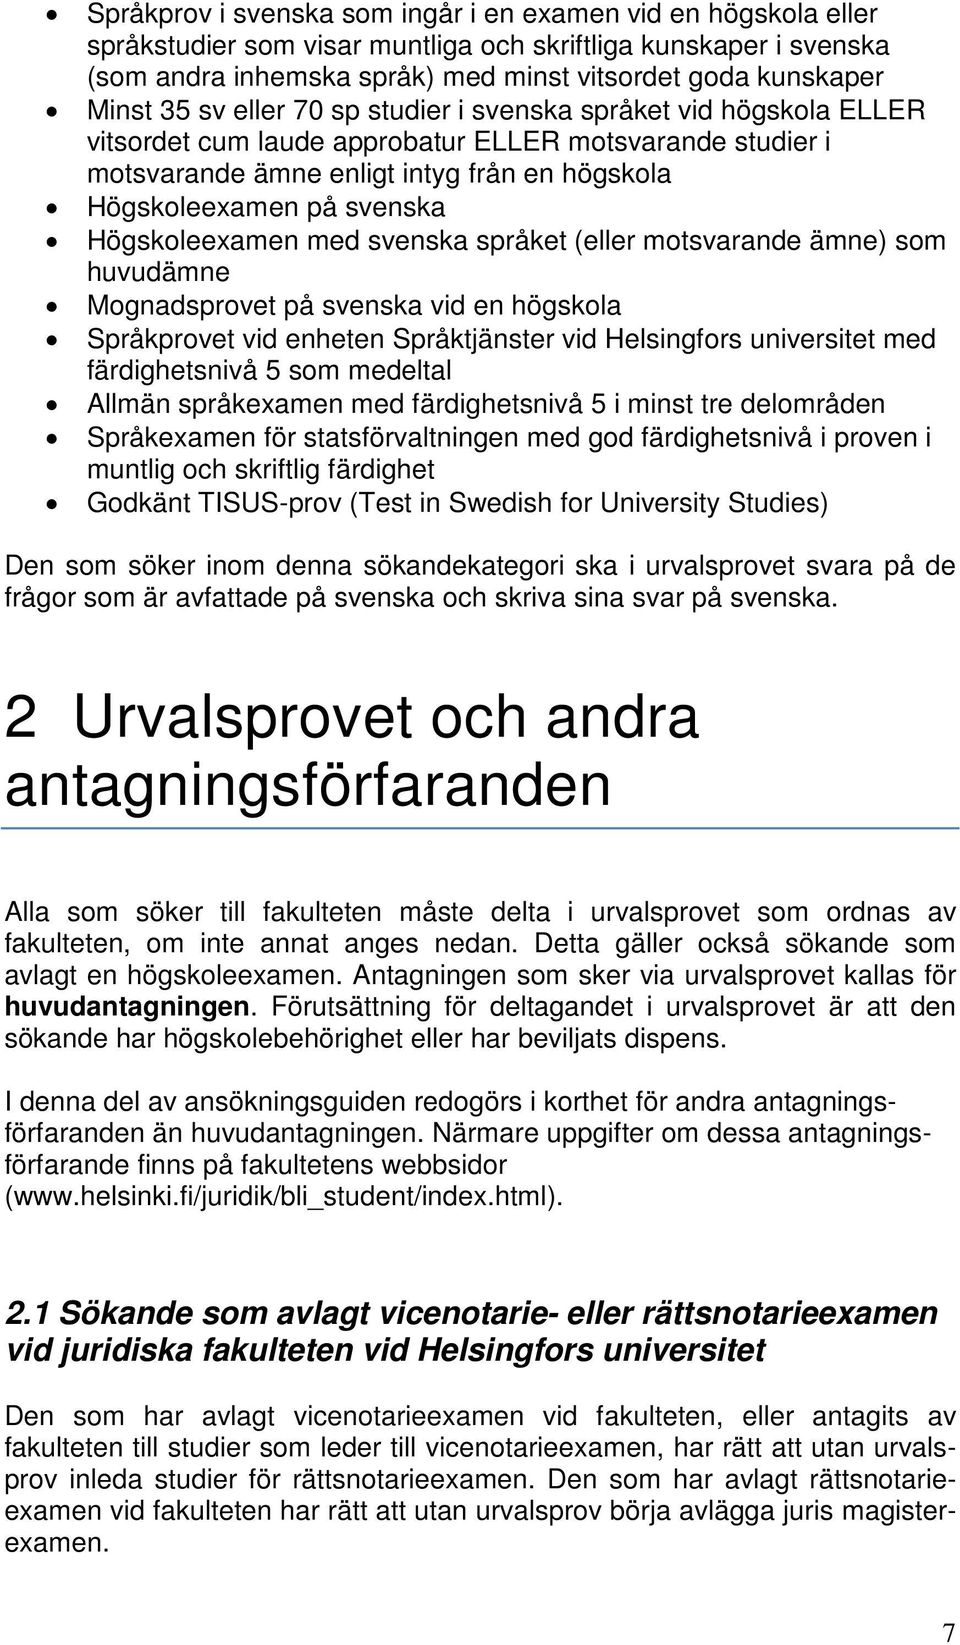 Högskoleexamen med svenska språket (eller motsvarande ämne) som huvudämne Mognadsprovet på svenska vid en högskola Språkprovet vid enheten Språktjänster vid Helsingfors universitet med färdighetsnivå